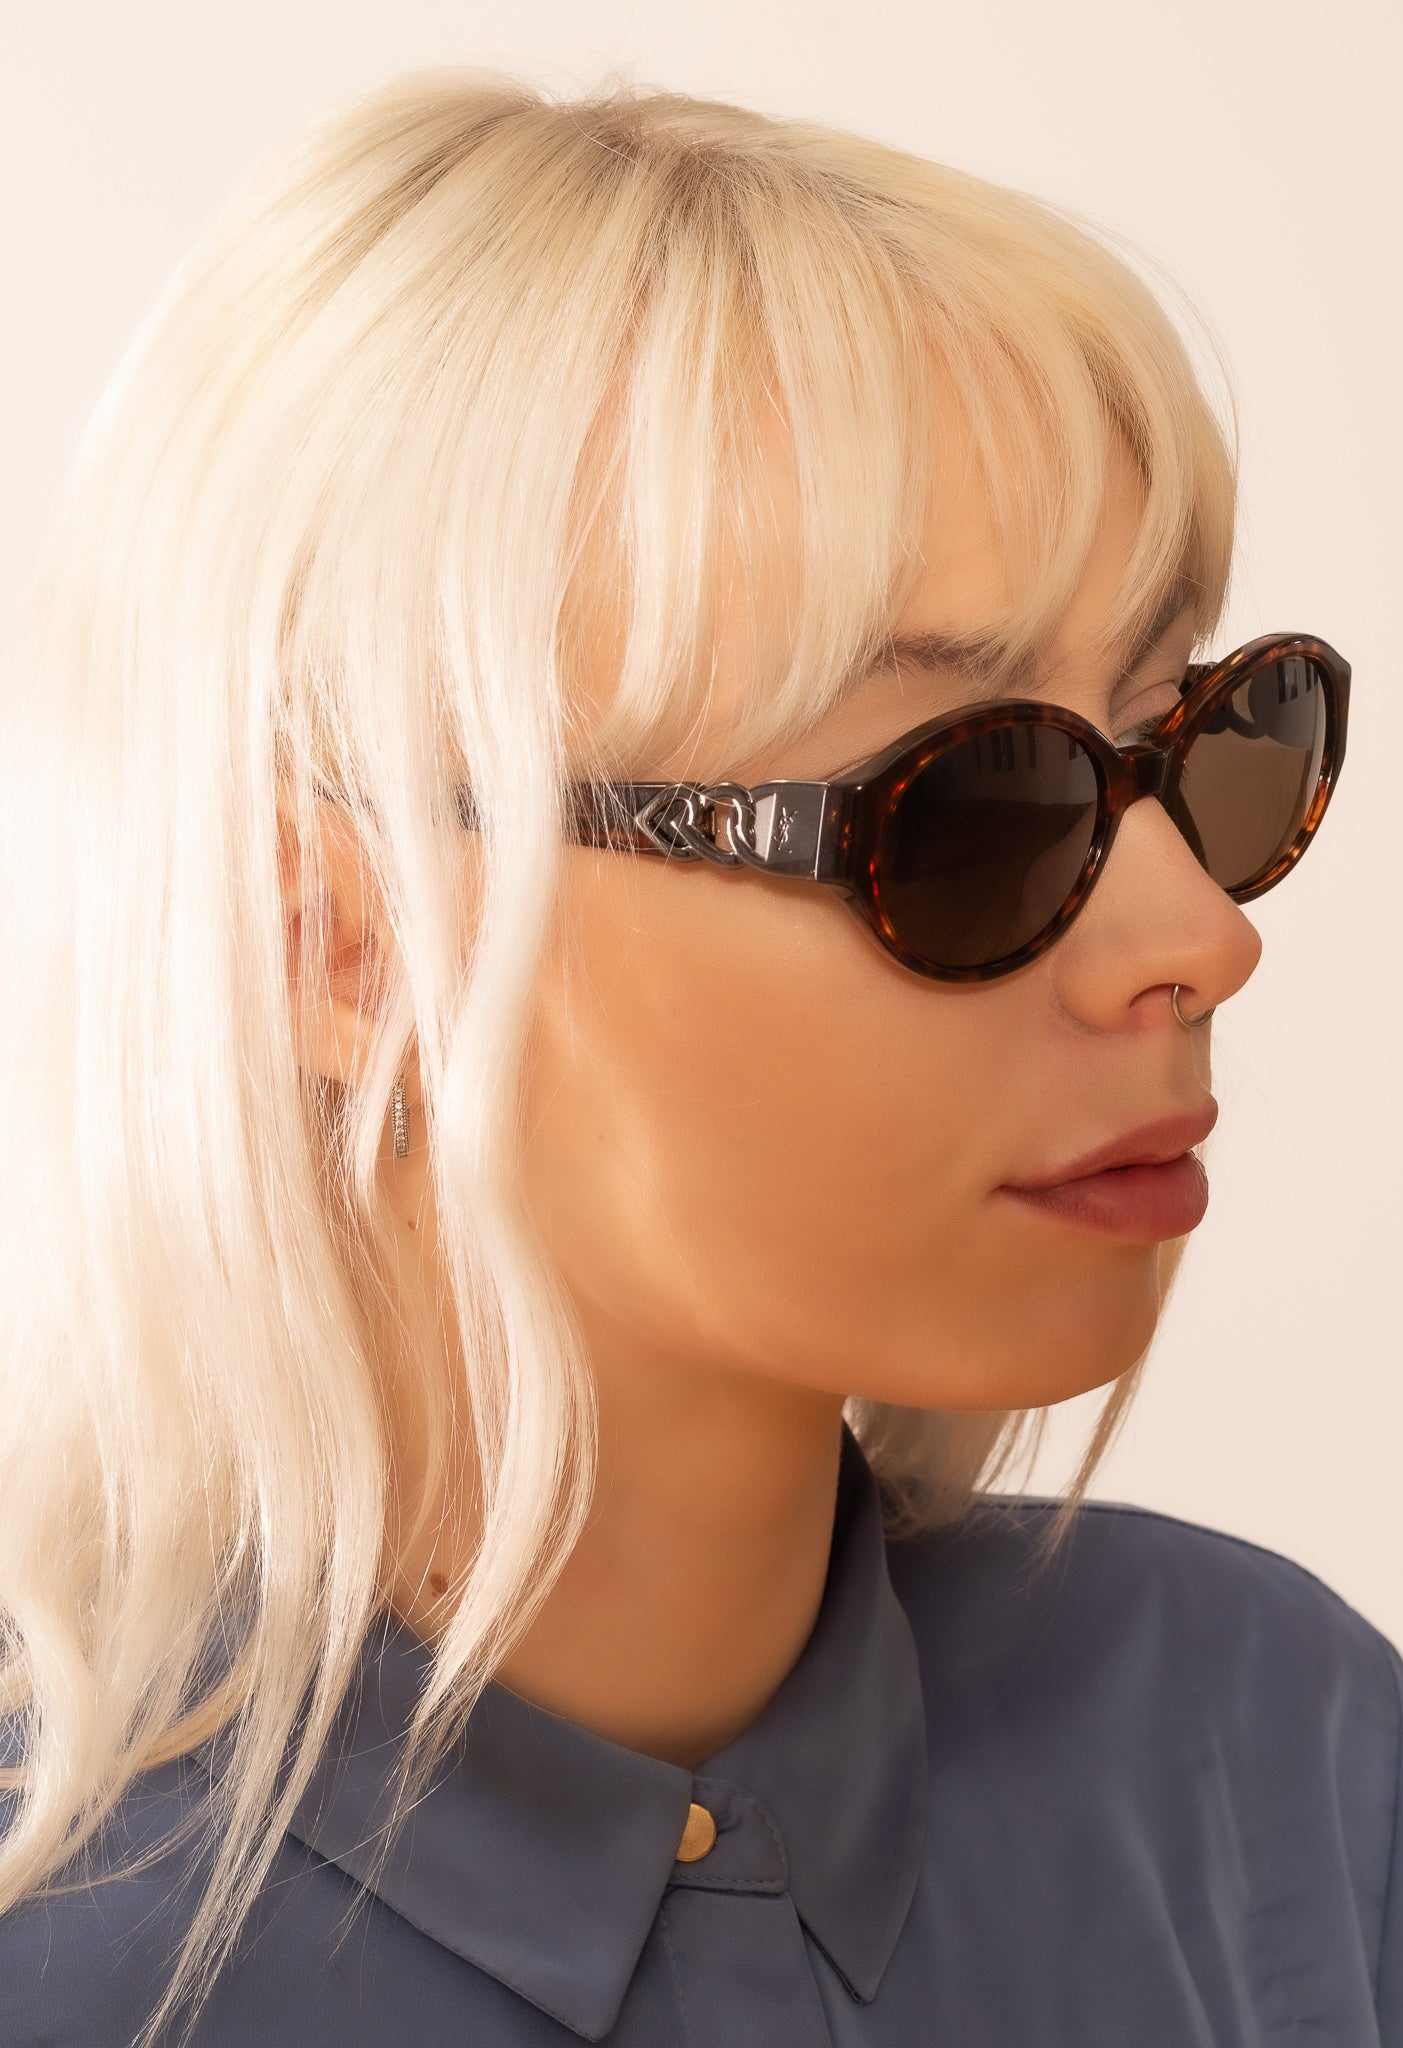 Yves Saint Laurent 6557 vintage sunglasses. YSL sunglasses. YSL love heart detail sunglasses. Rare vintage YSL sunglasses. Vintage designer sunglasses. Heart detail sunglasses.